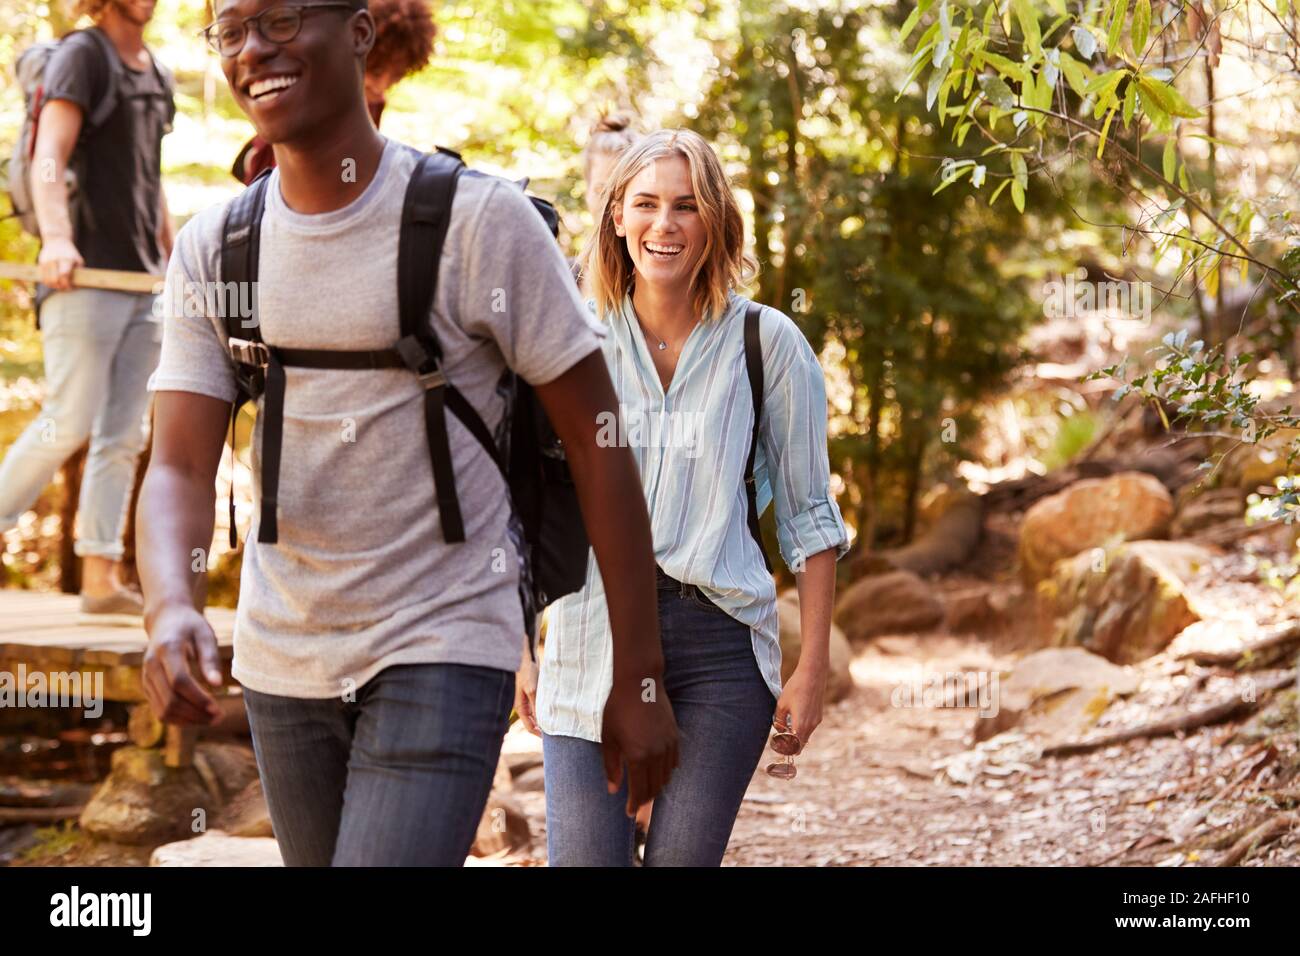 Grupo milenario de feliz amigos caminando juntos durante una caminata en el bosque, cerrar Foto de stock